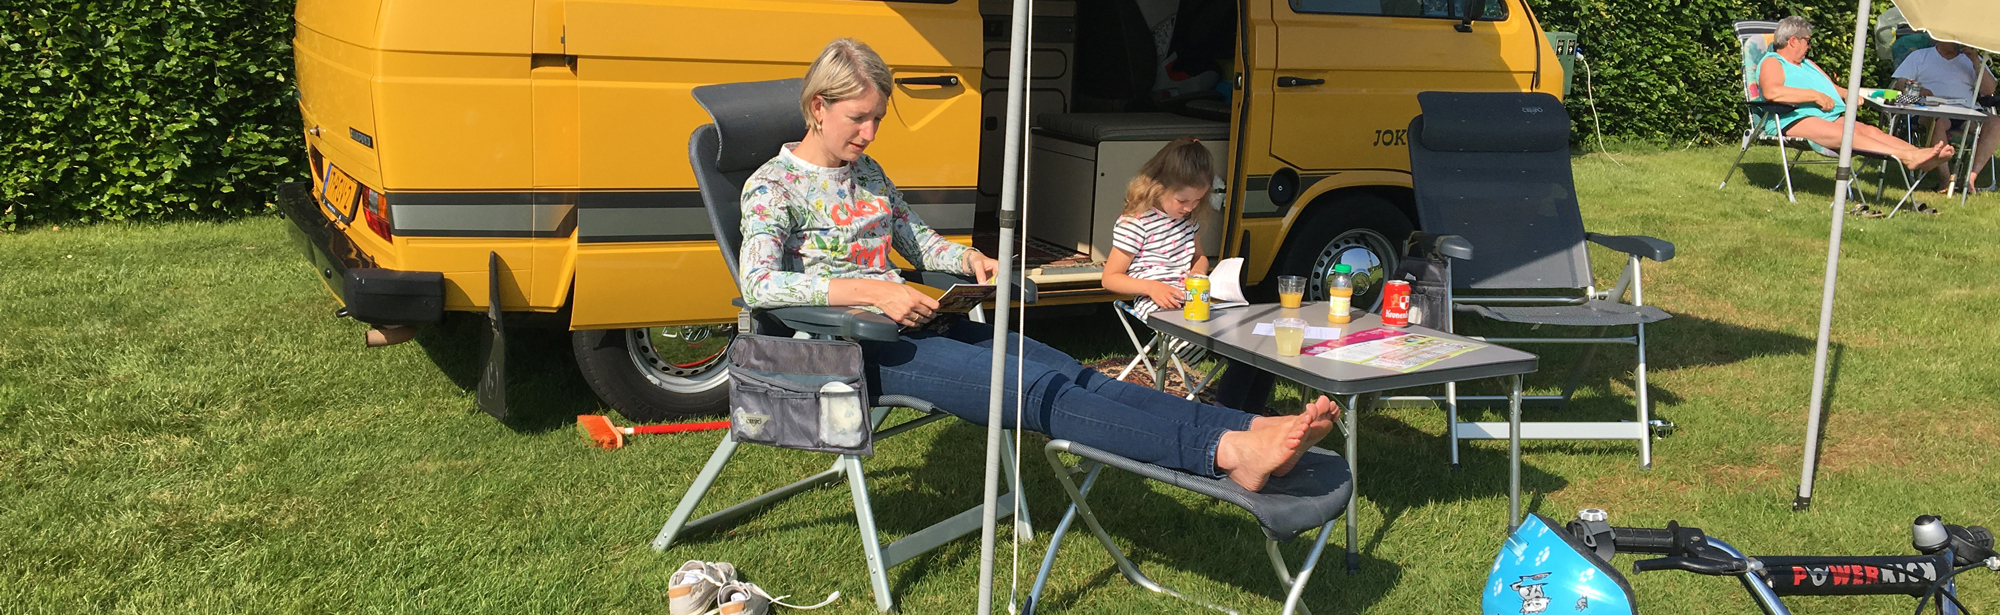 Moeder en dochter zitten in een stoel voor het camperbusje op de camping. 